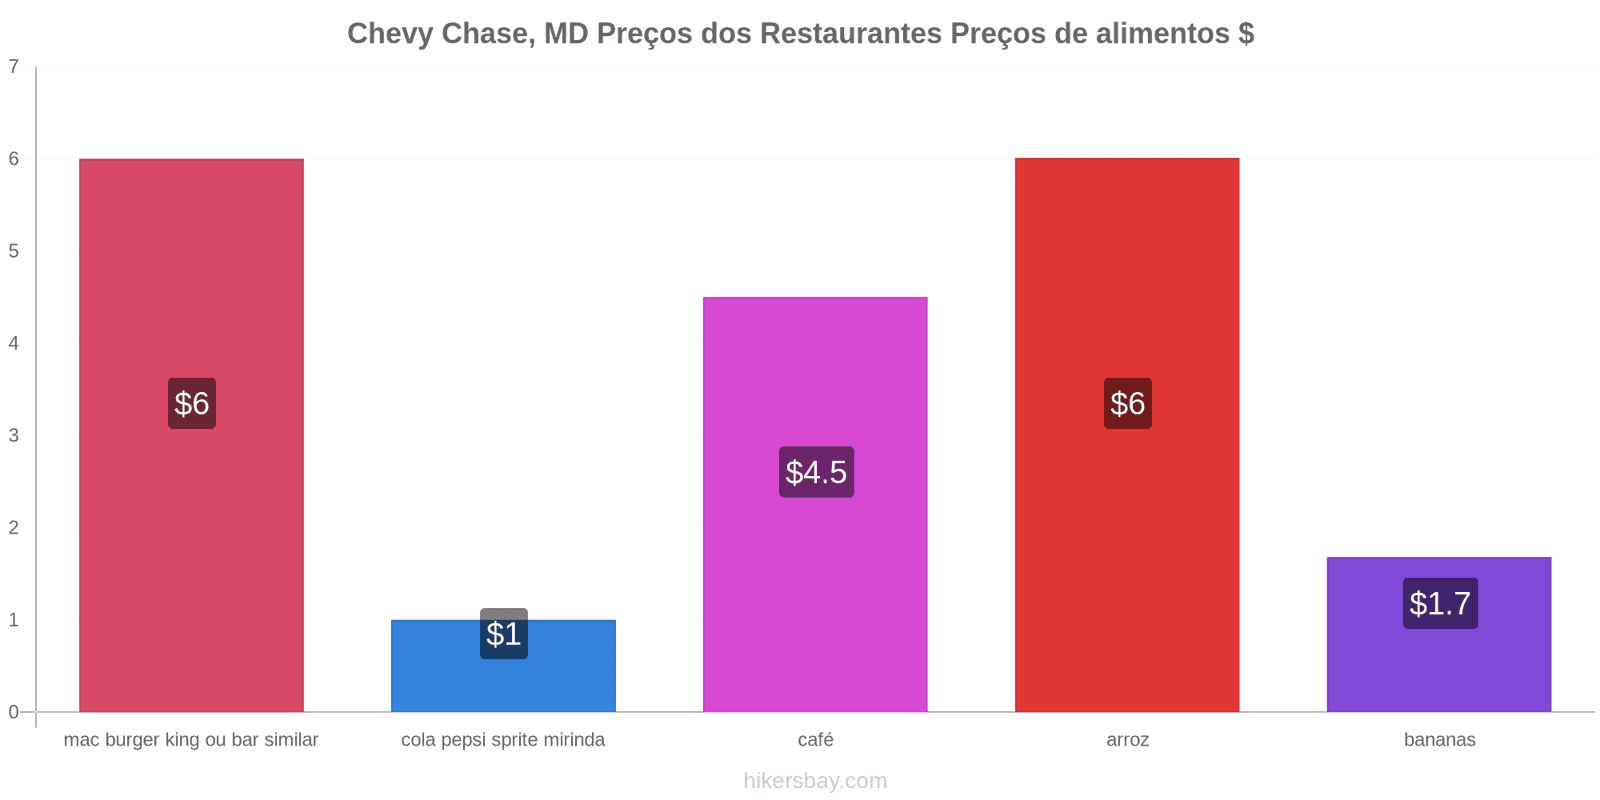 Chevy Chase, MD mudanças de preços hikersbay.com